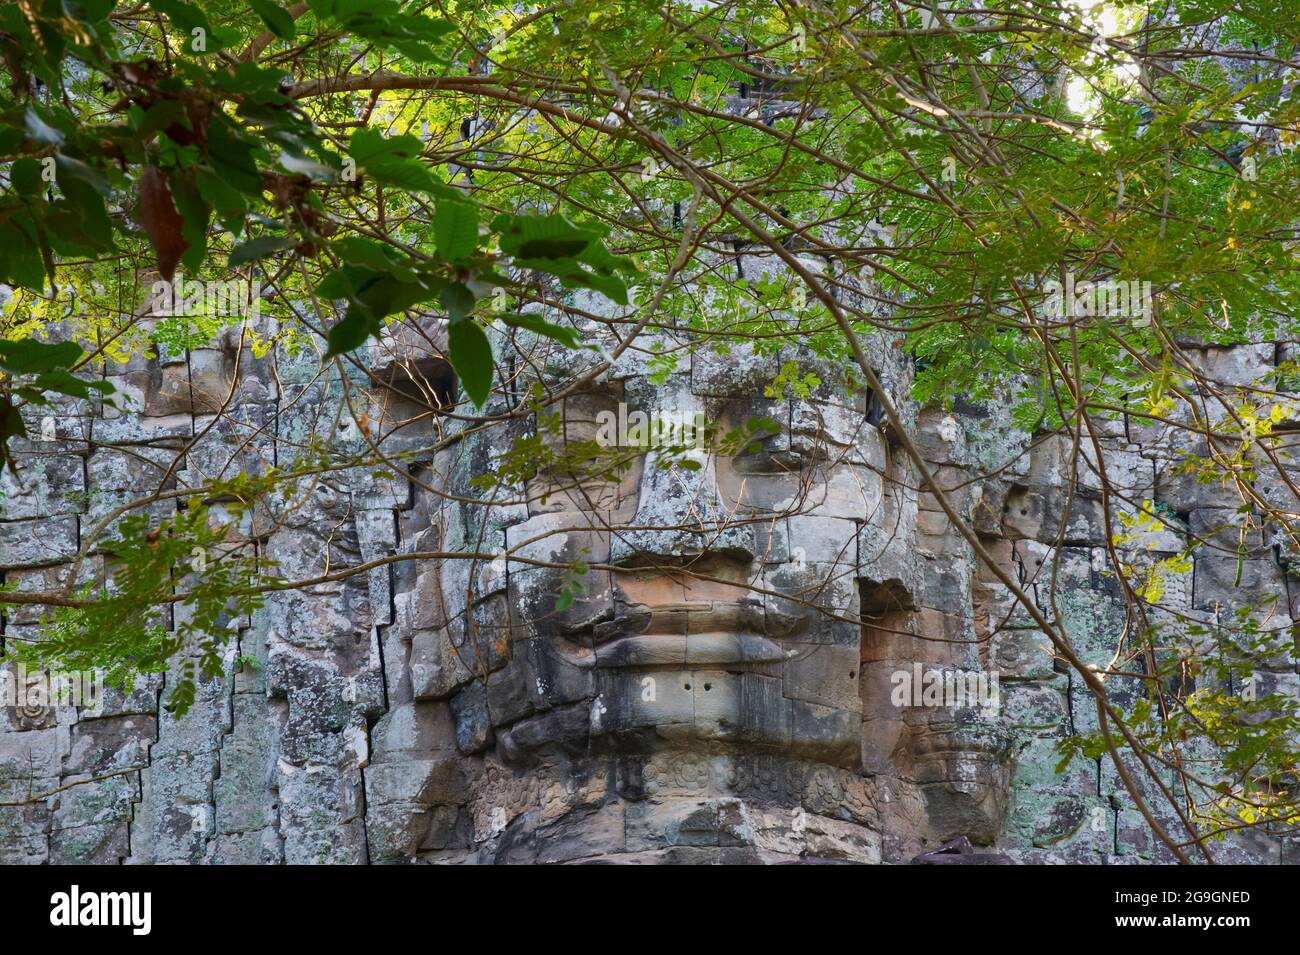 Sudeste de Asia, Camboya, provincia de Siem Reap, sitio de Angkor, patrimonio mundial de la Unesco desde 1992, templo de Angkor Thom, puerta de entrada oeste Foto de stock